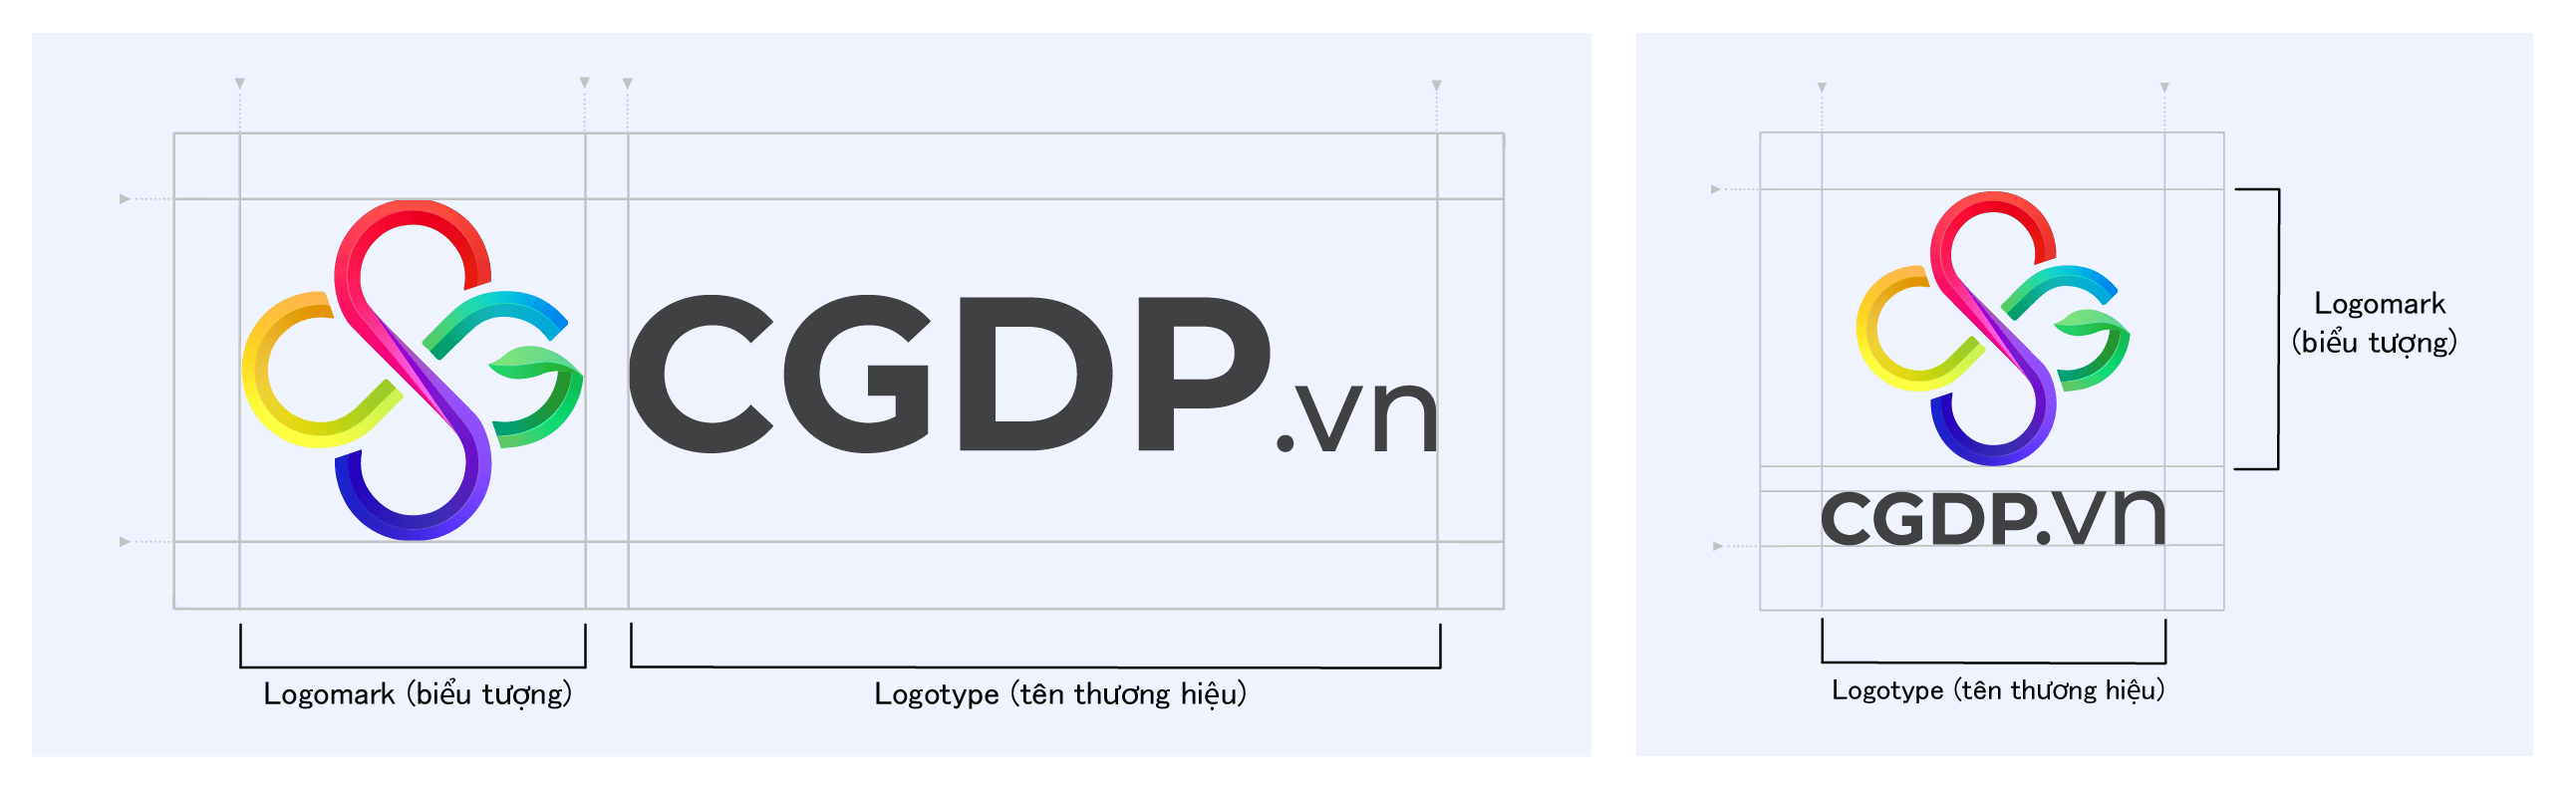 Cấu tạo logo CGDP.vn